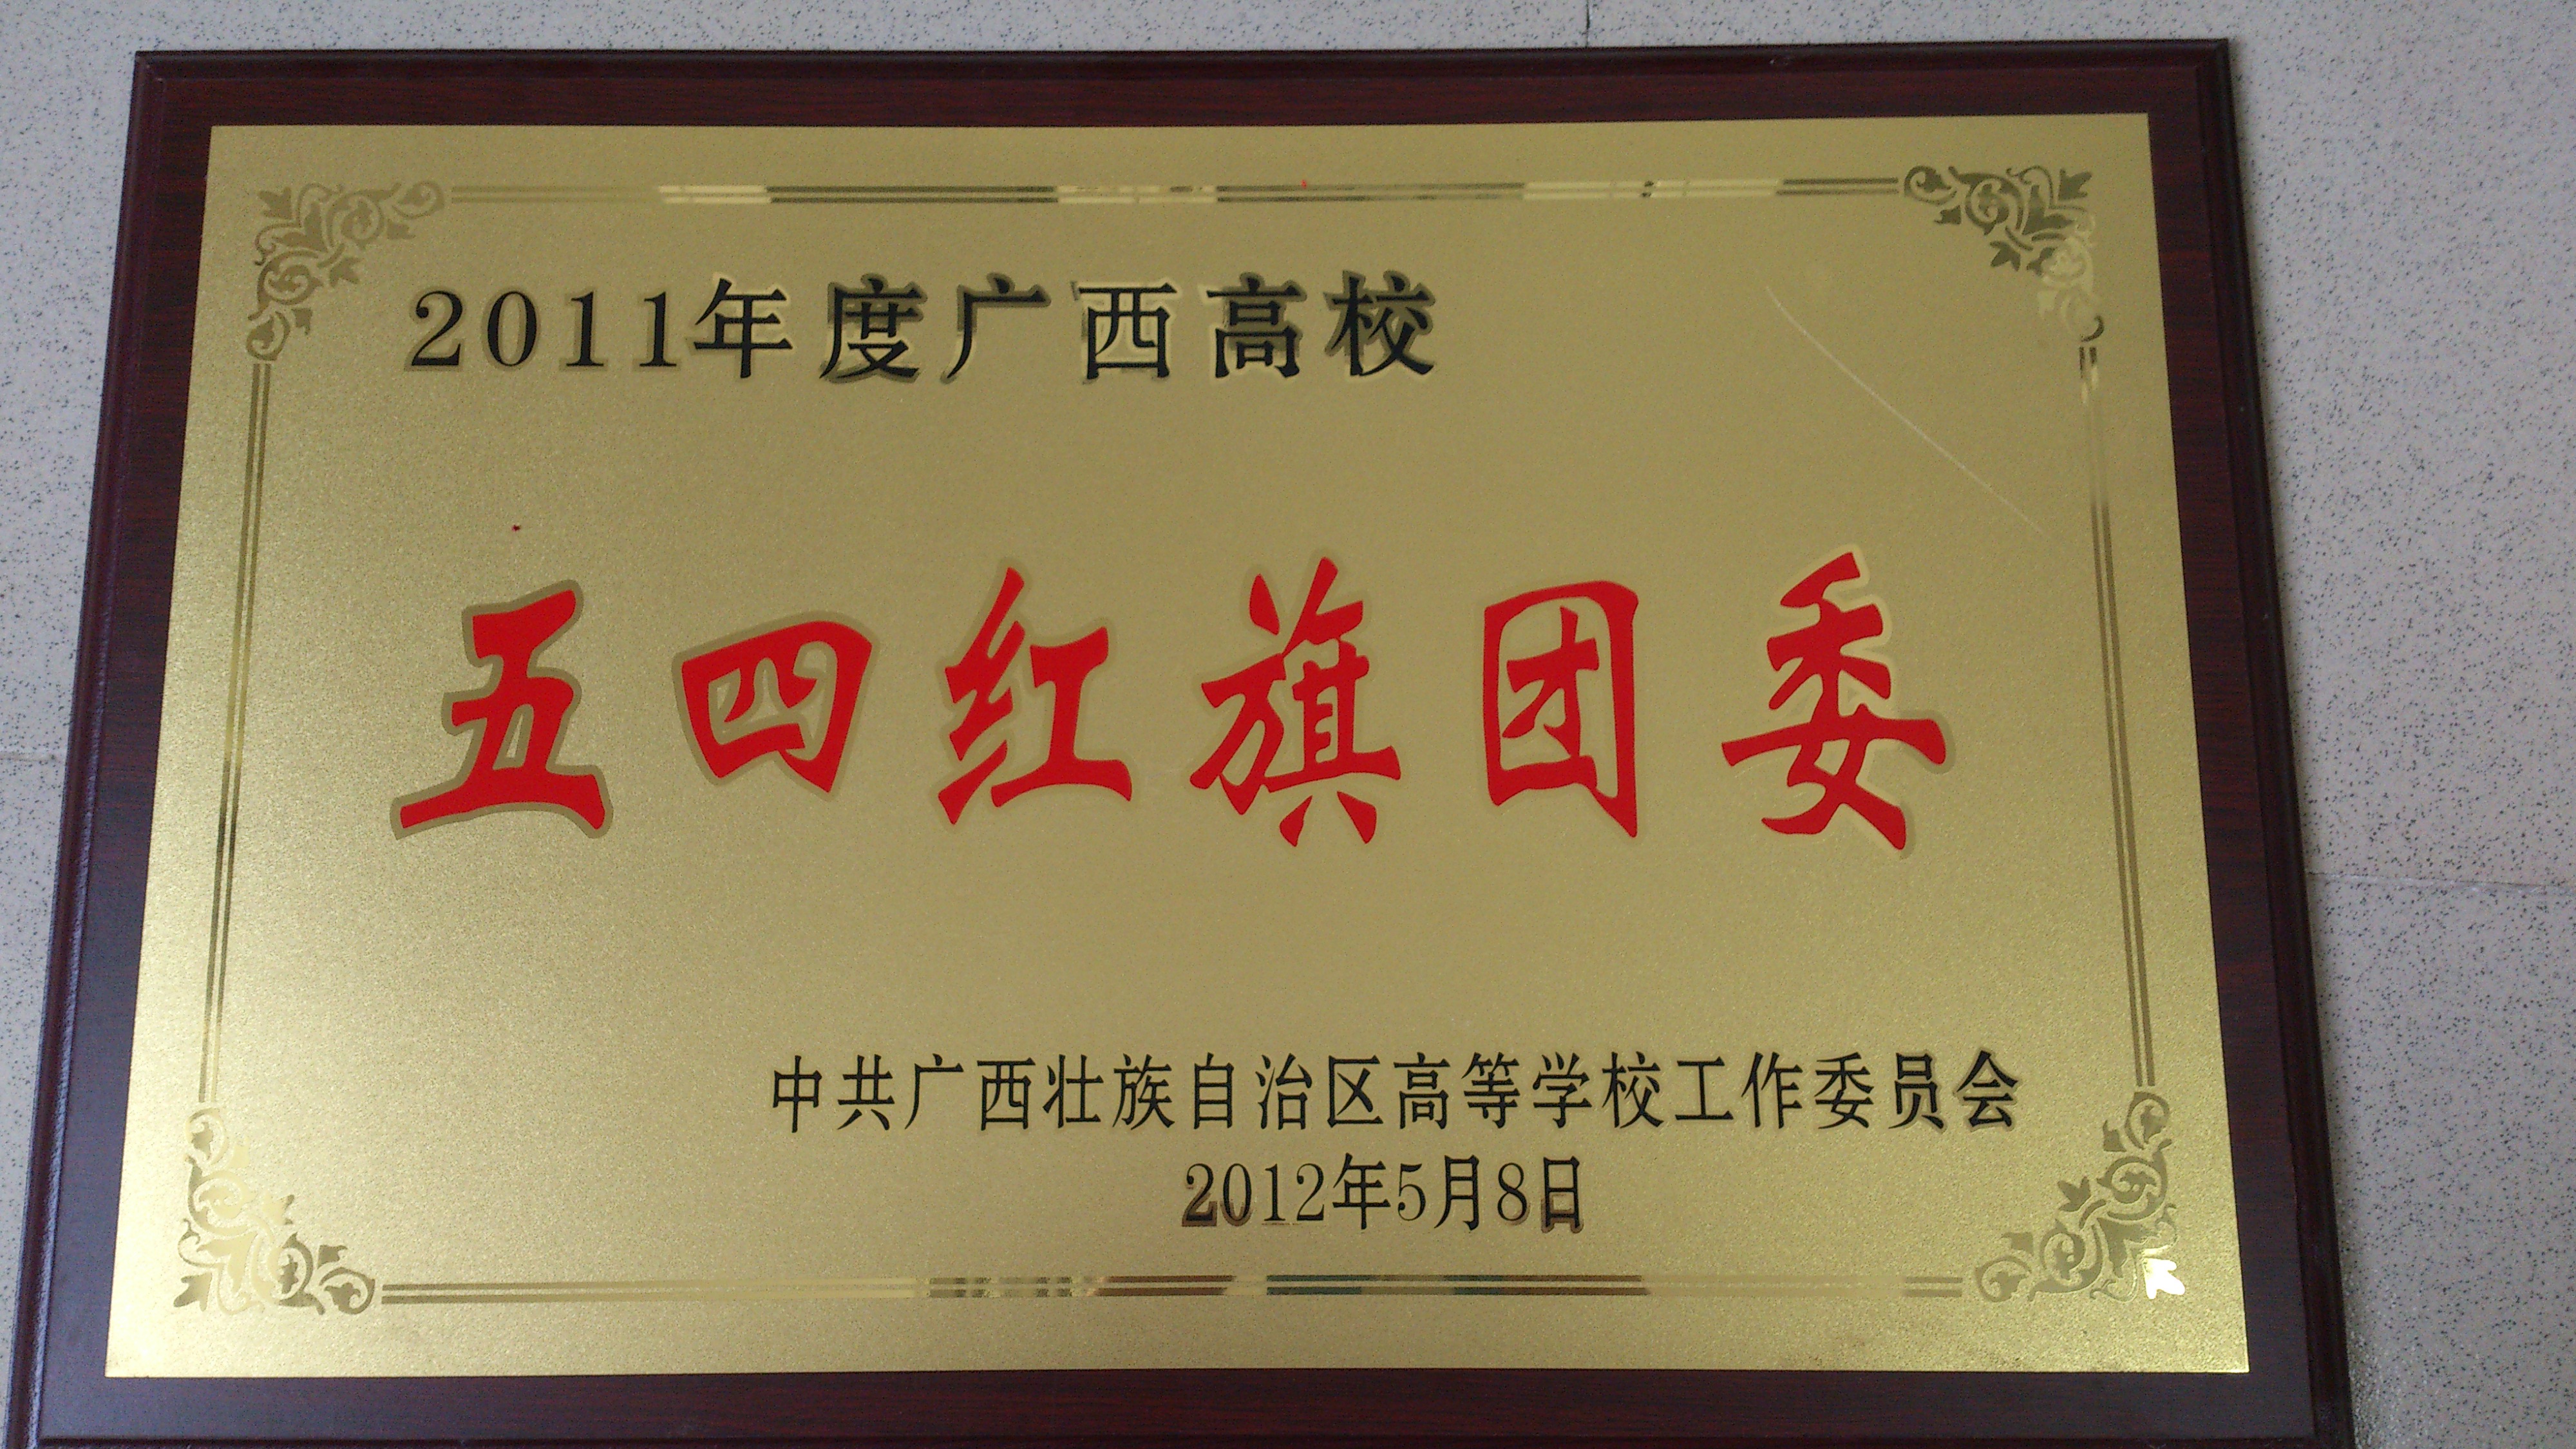 2012年 五四红旗团委 自治区级